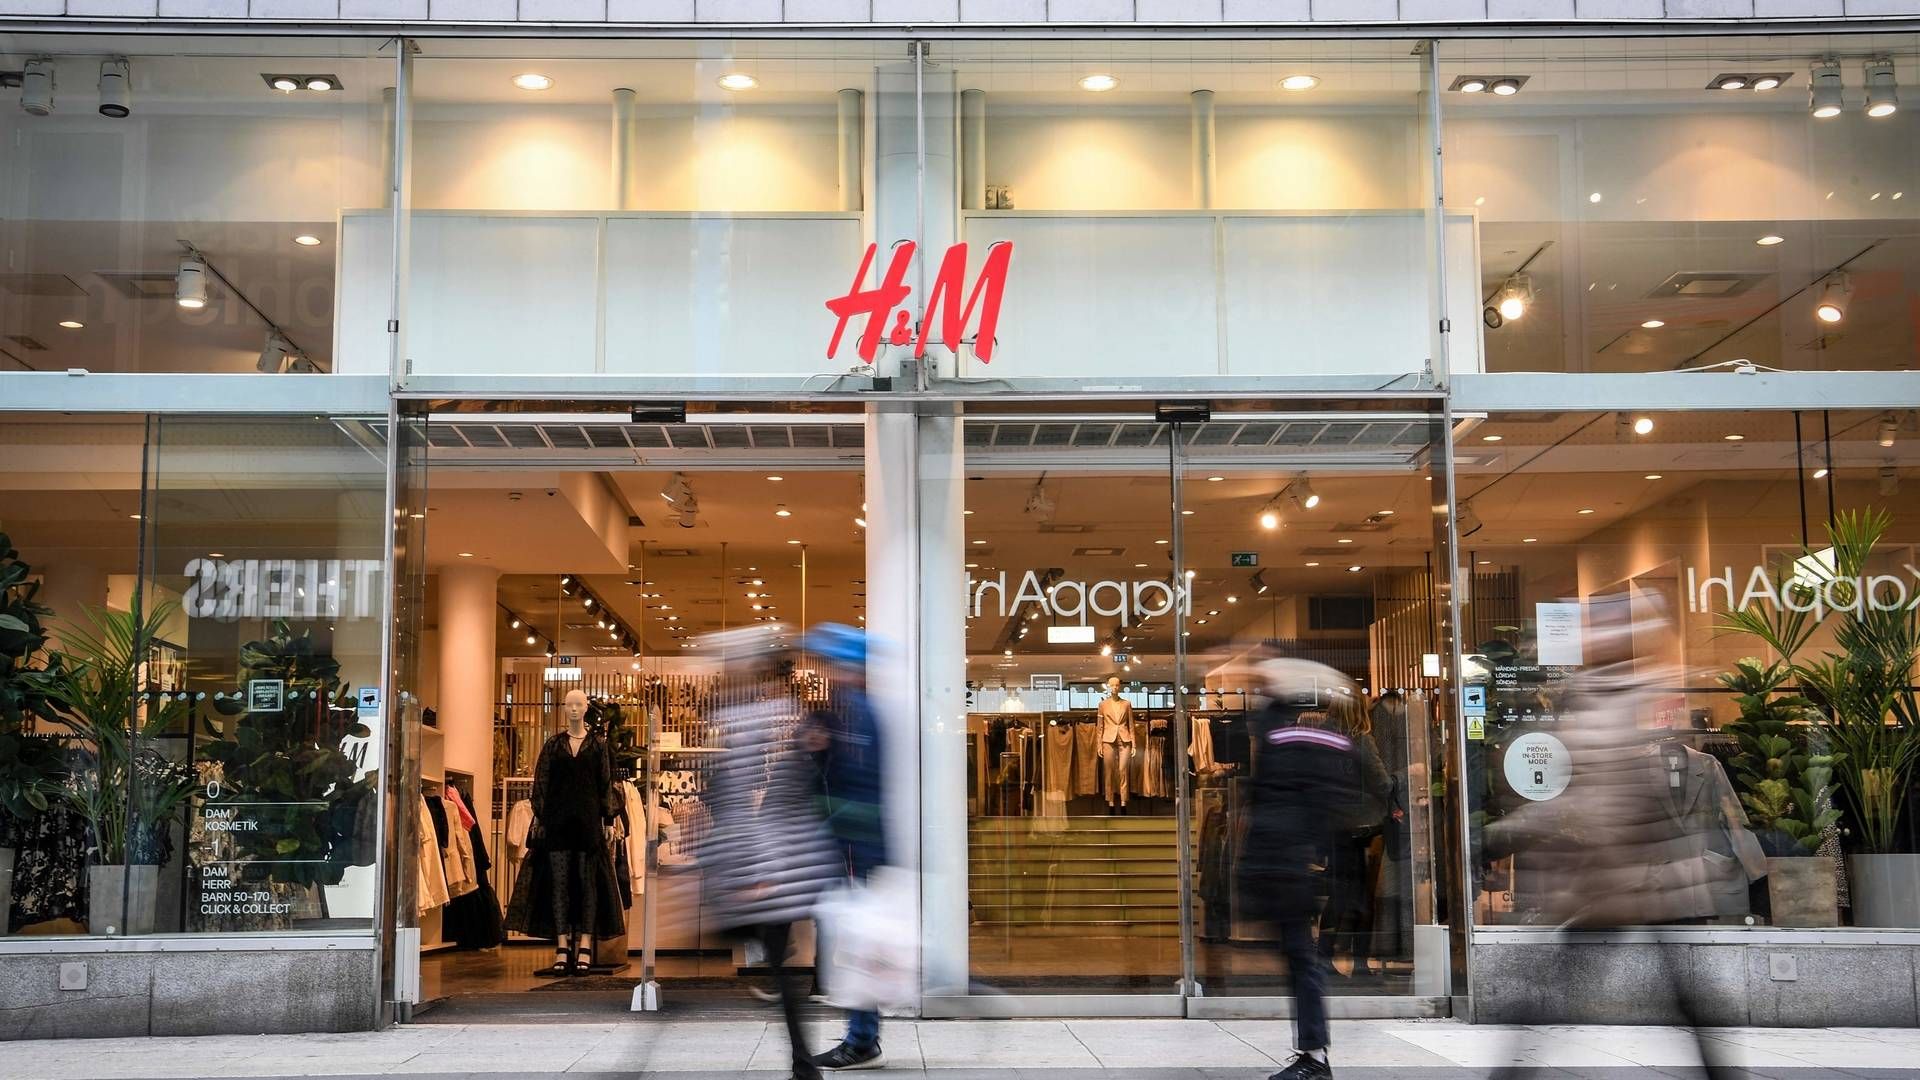 H&M i Danmark var ligesom andre store dele af detaillivet ramt hårdt under tvangslukningerne af butikslivet i 2020. | Foto: Fredrik Sandberg/AFP